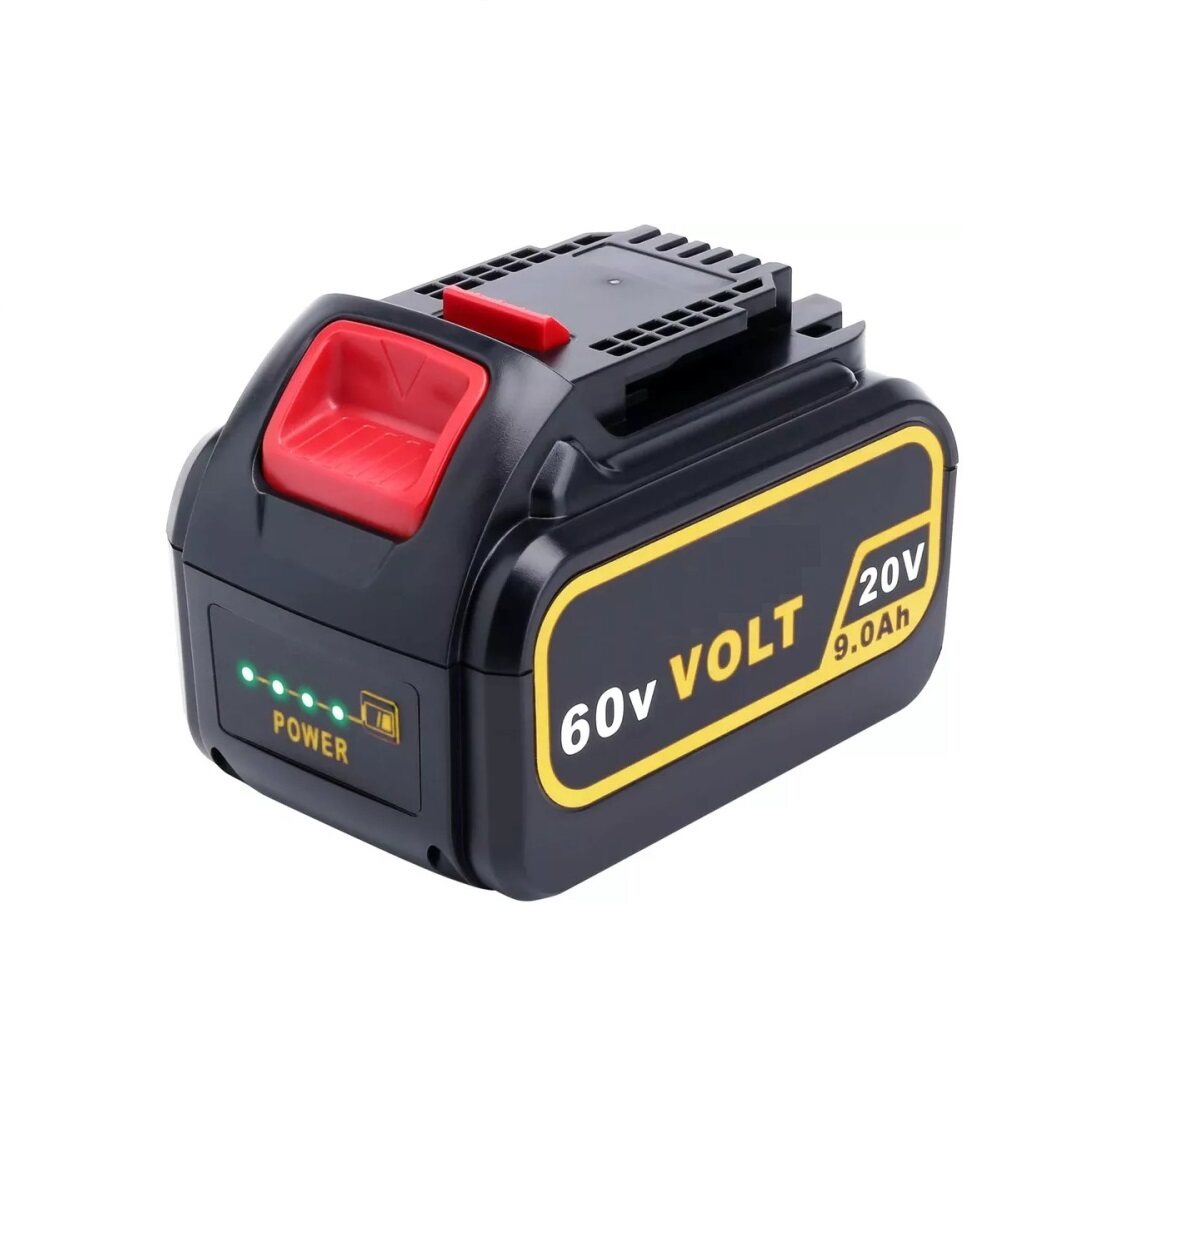 Hilong Li-ion 18650 3000mAh-9000mAh 20V/60V battery pack for power tool